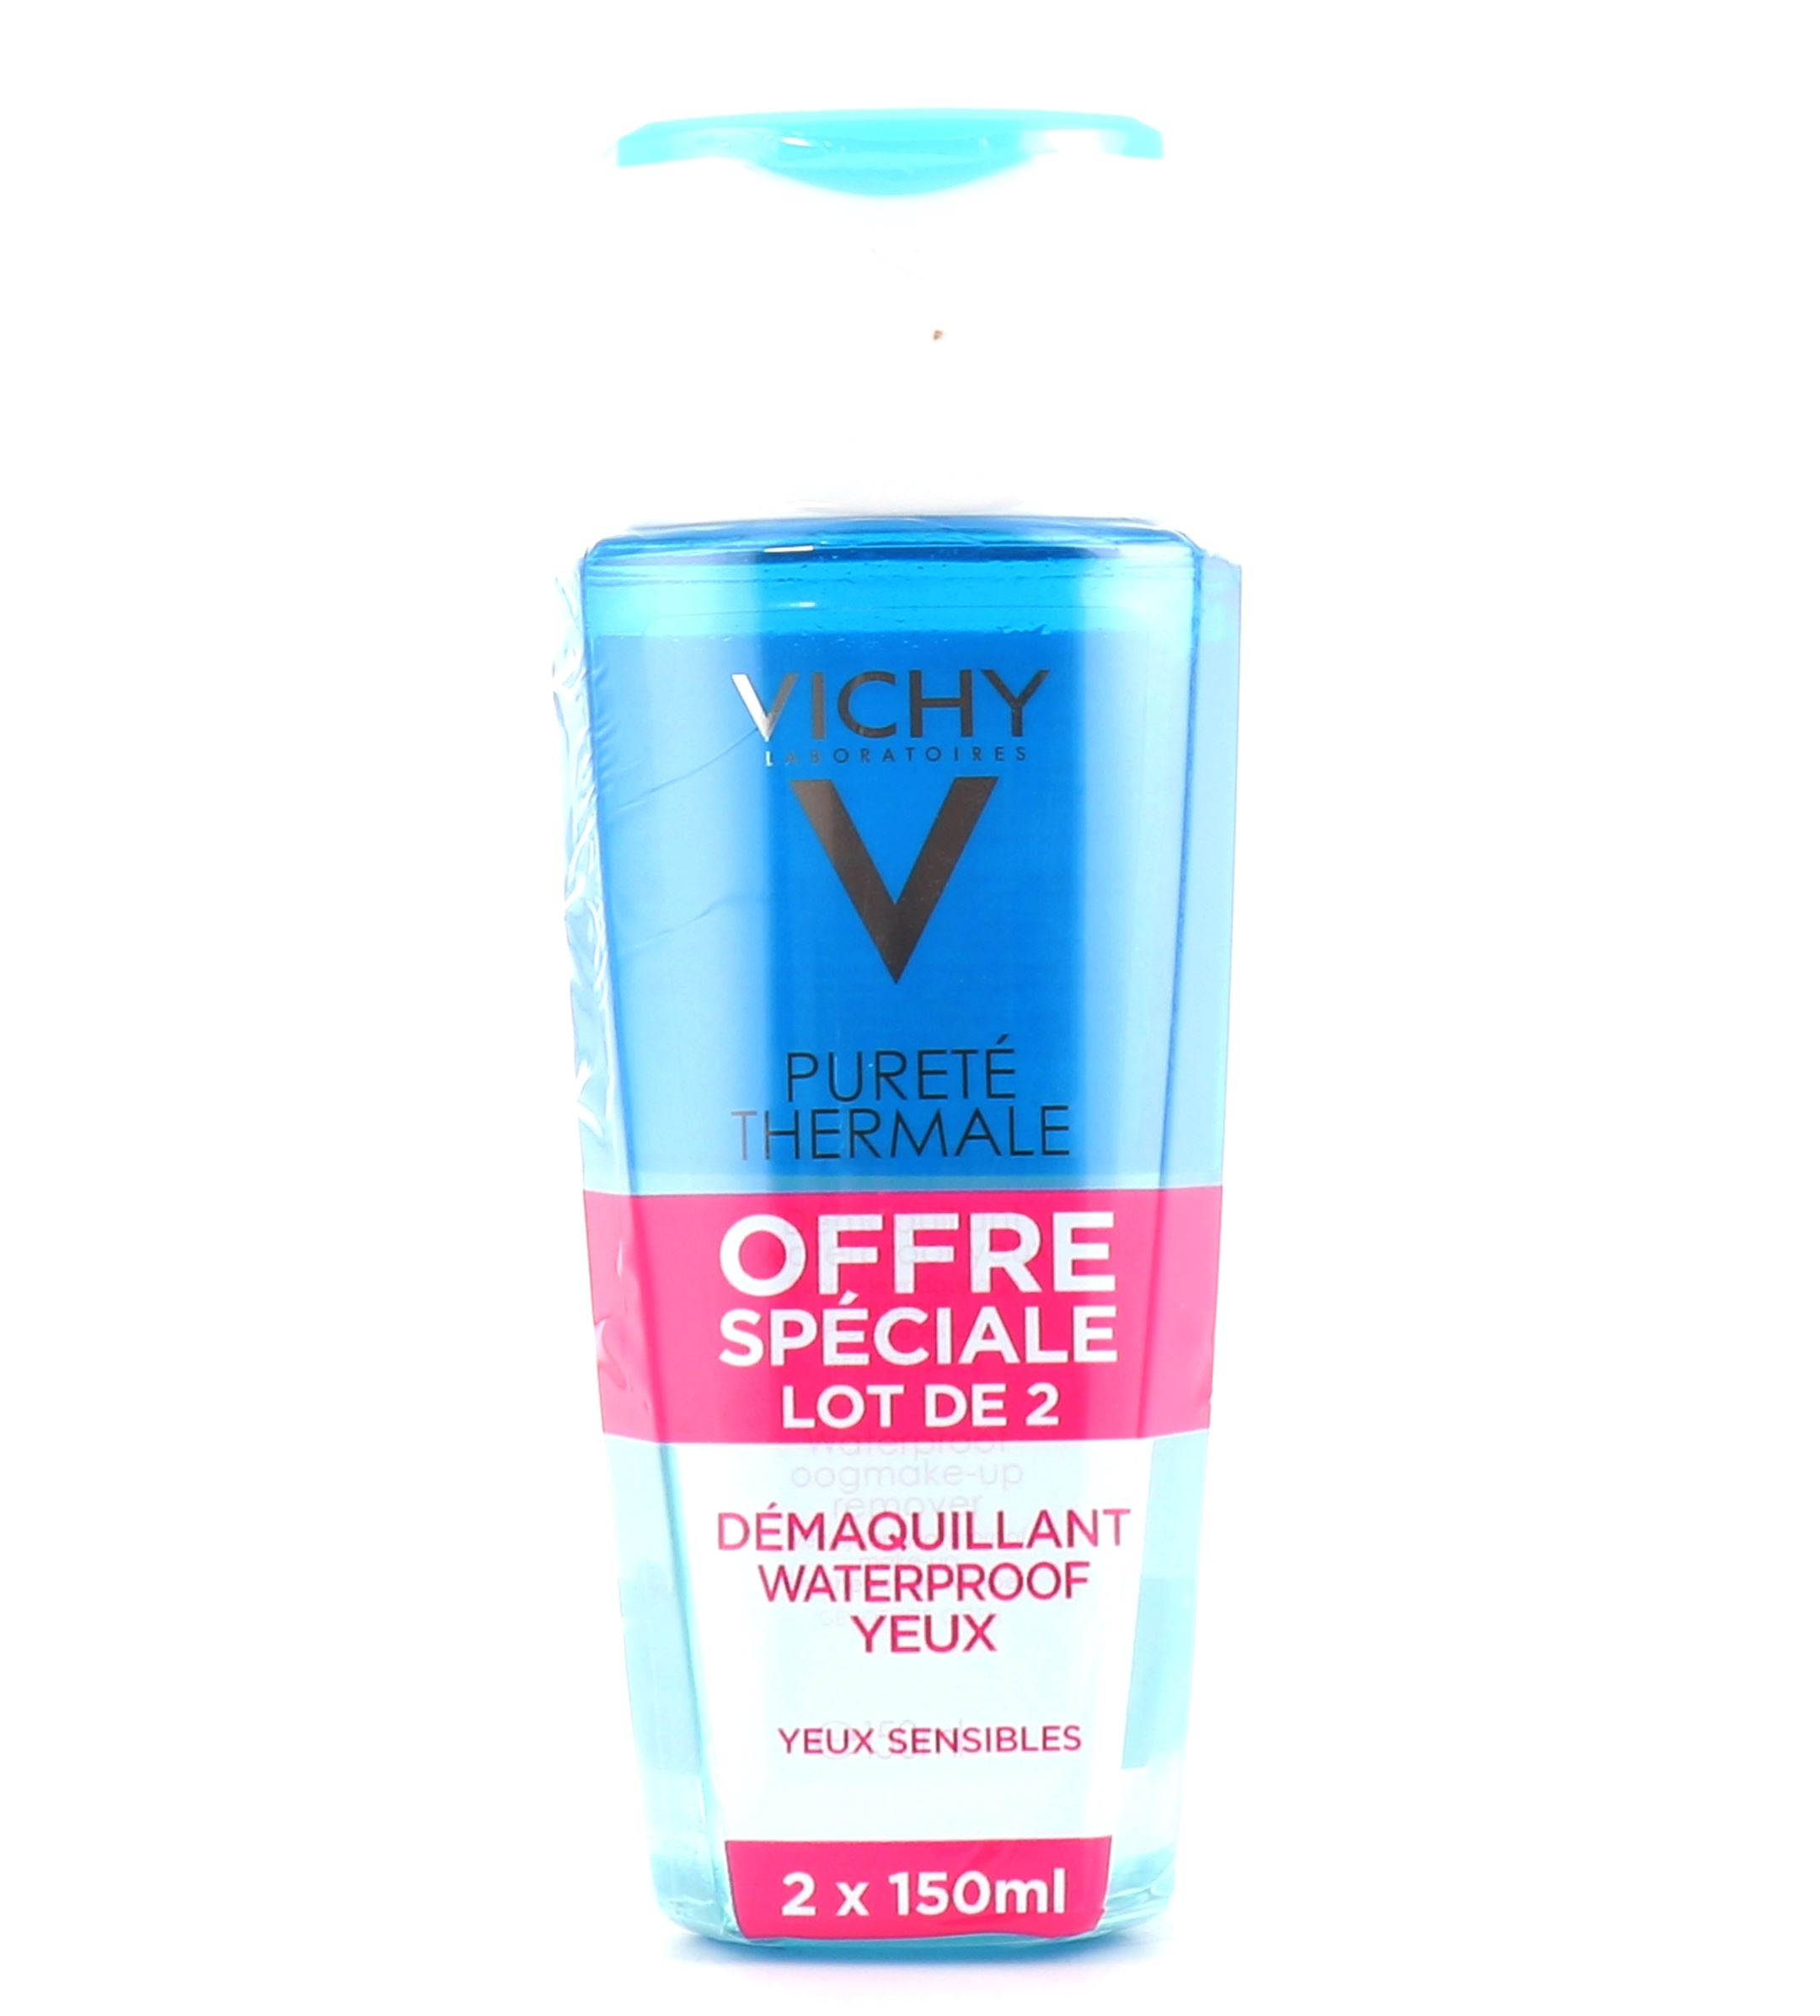 Pureté thermale démaquillant waterproof yeux de Vichy 100 ml nettoie et  élimine le maquillage